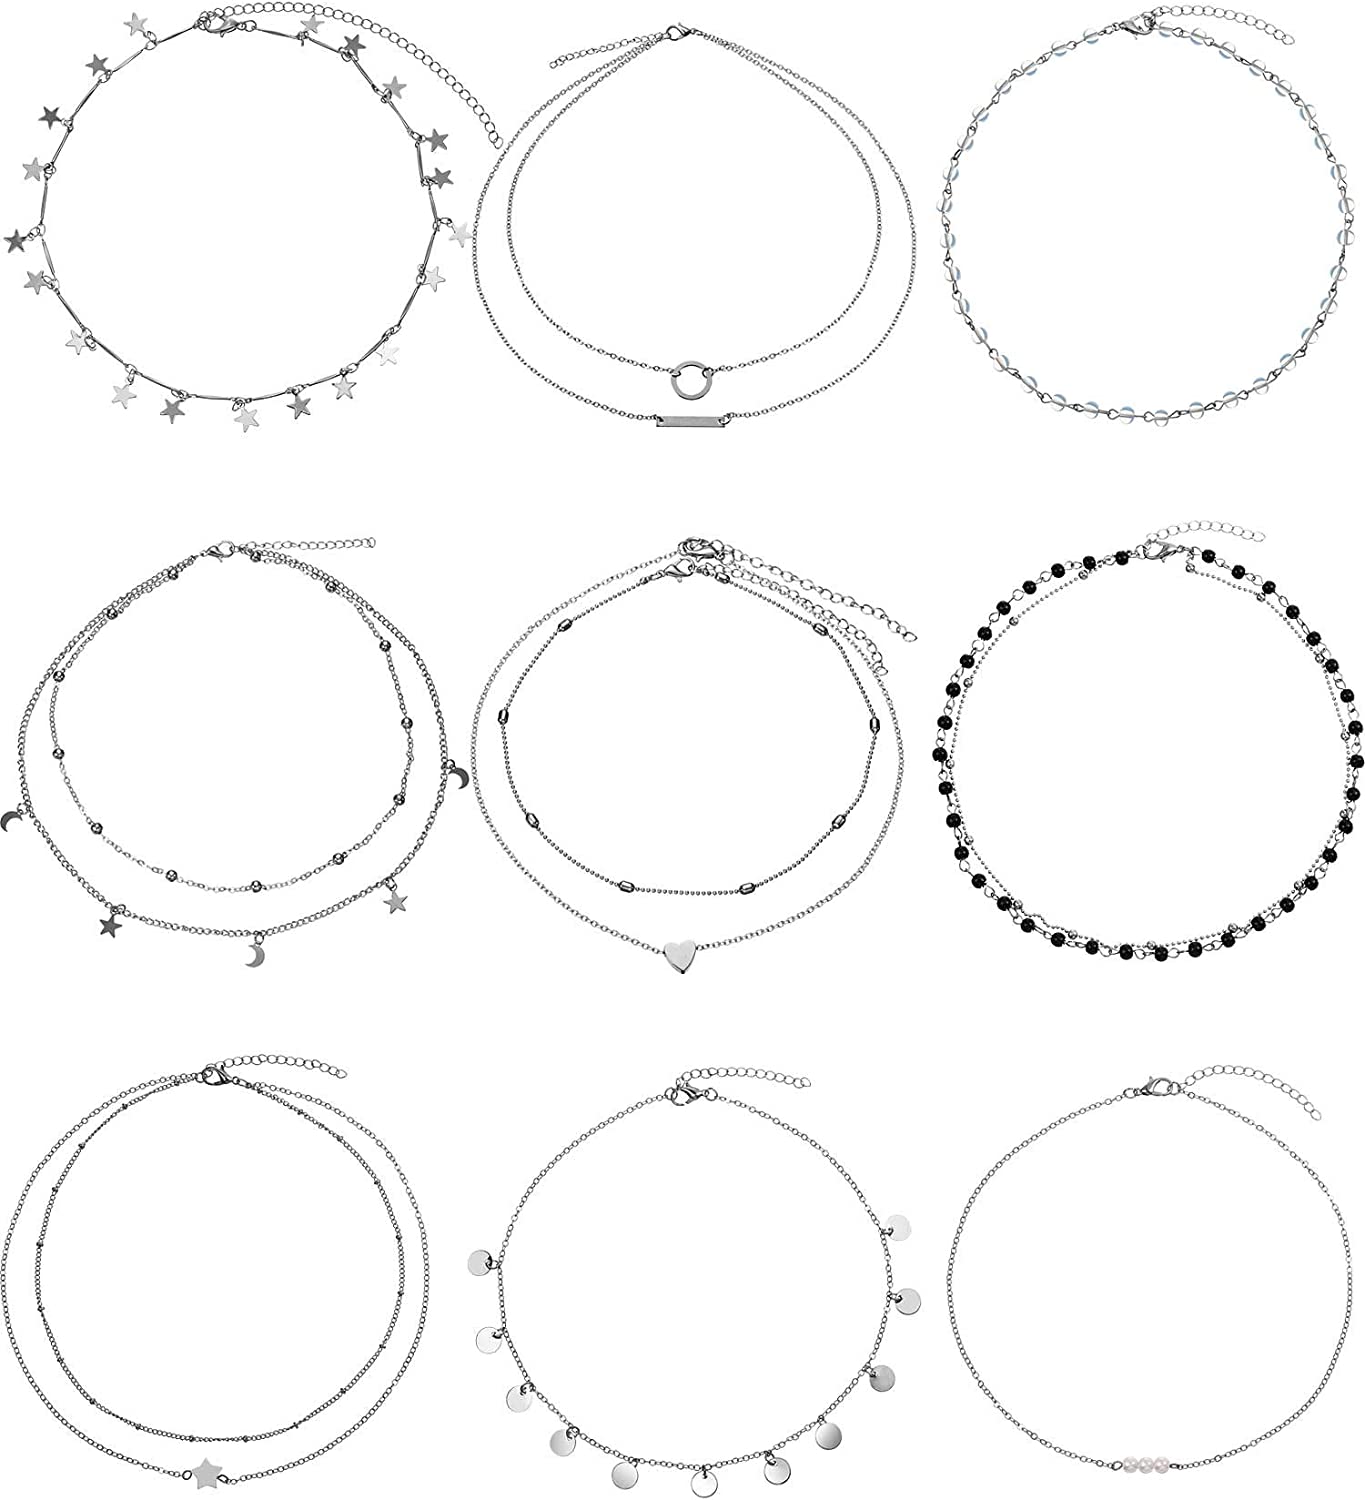 BBTO 9 Pieces Women Girls Layered Choker Necklace Sliver Layered Pendant Choker Jewelry Set (Style 1)